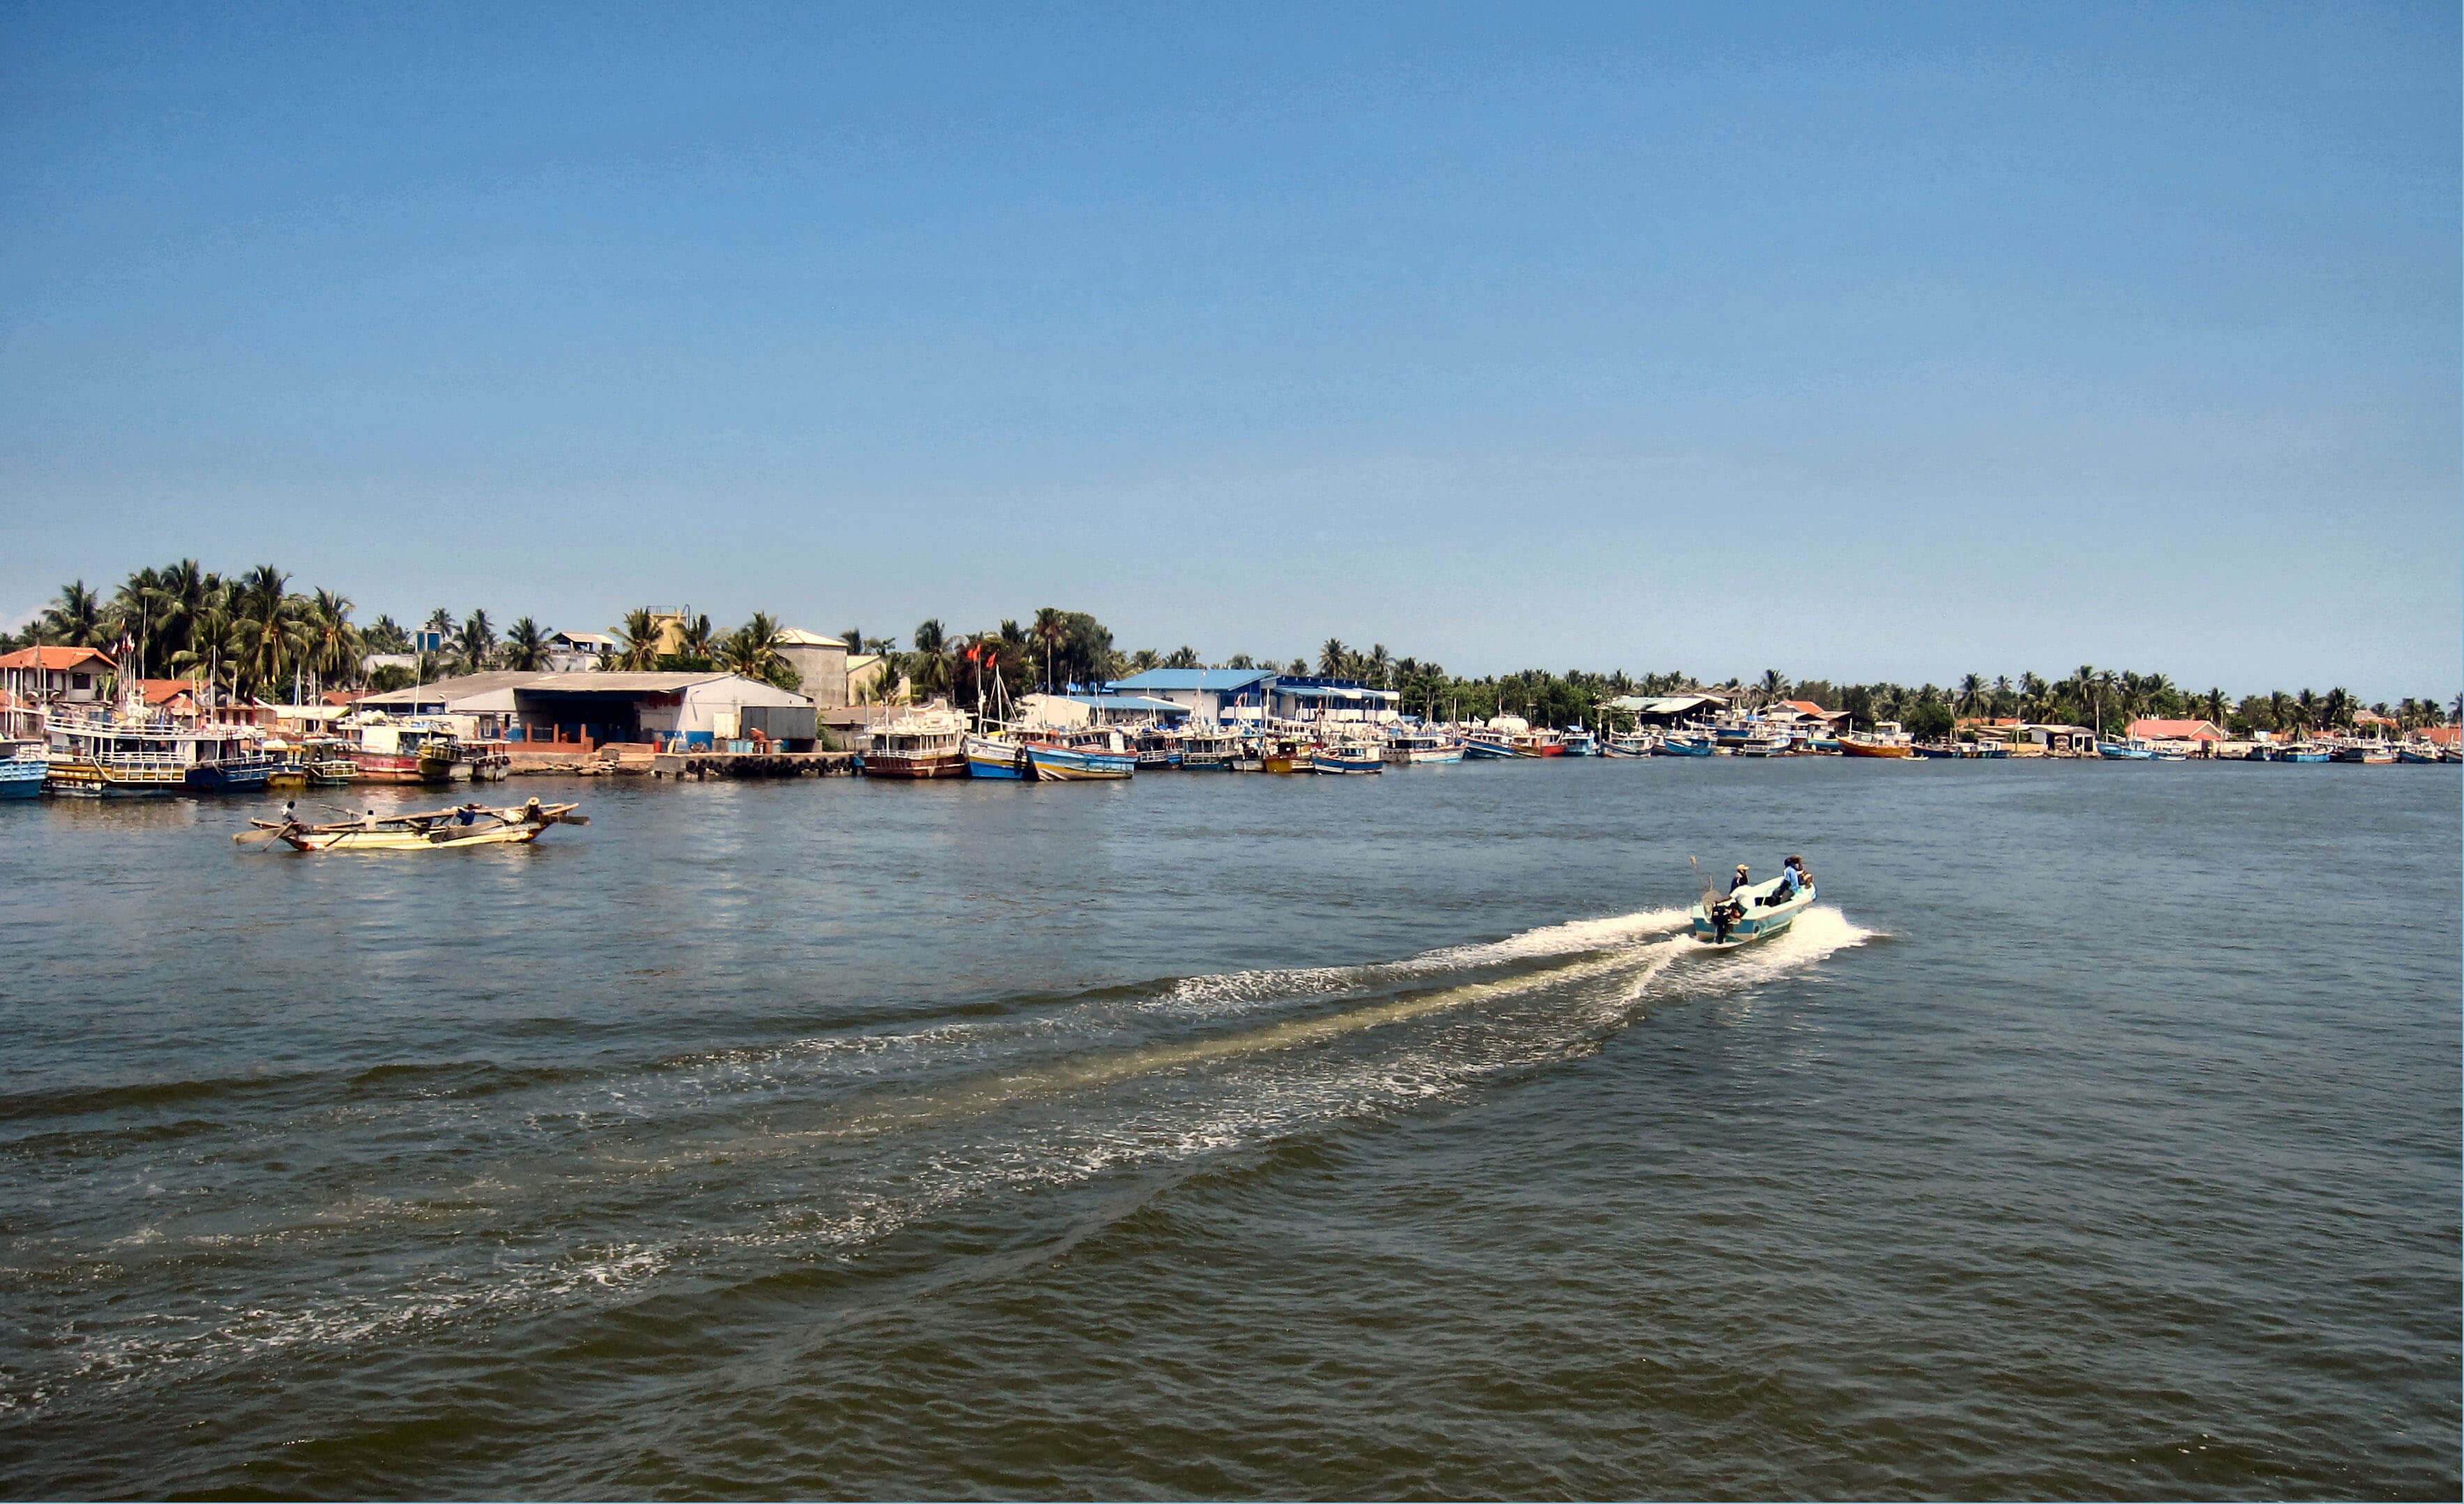 The boat ride in Negombo lagoon in Sri Lanka